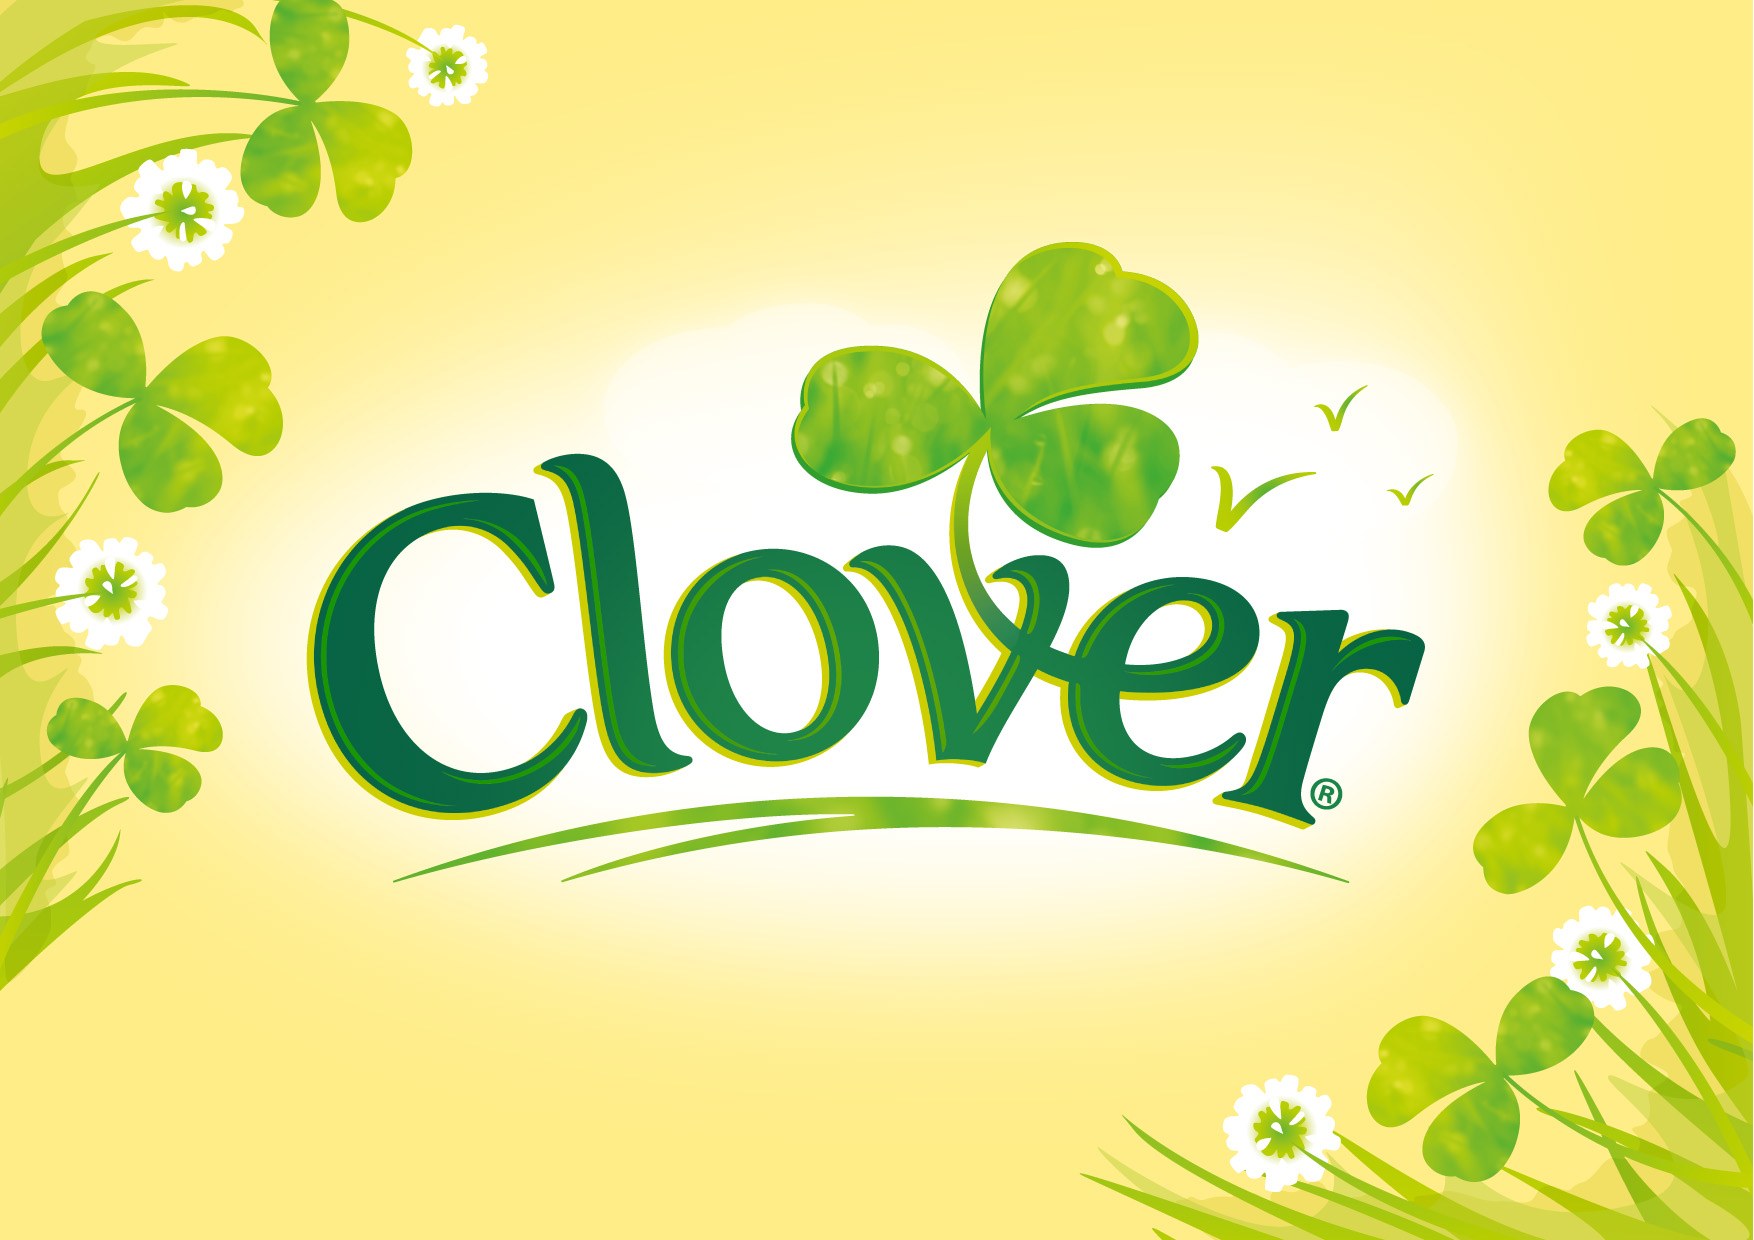 Clover _01